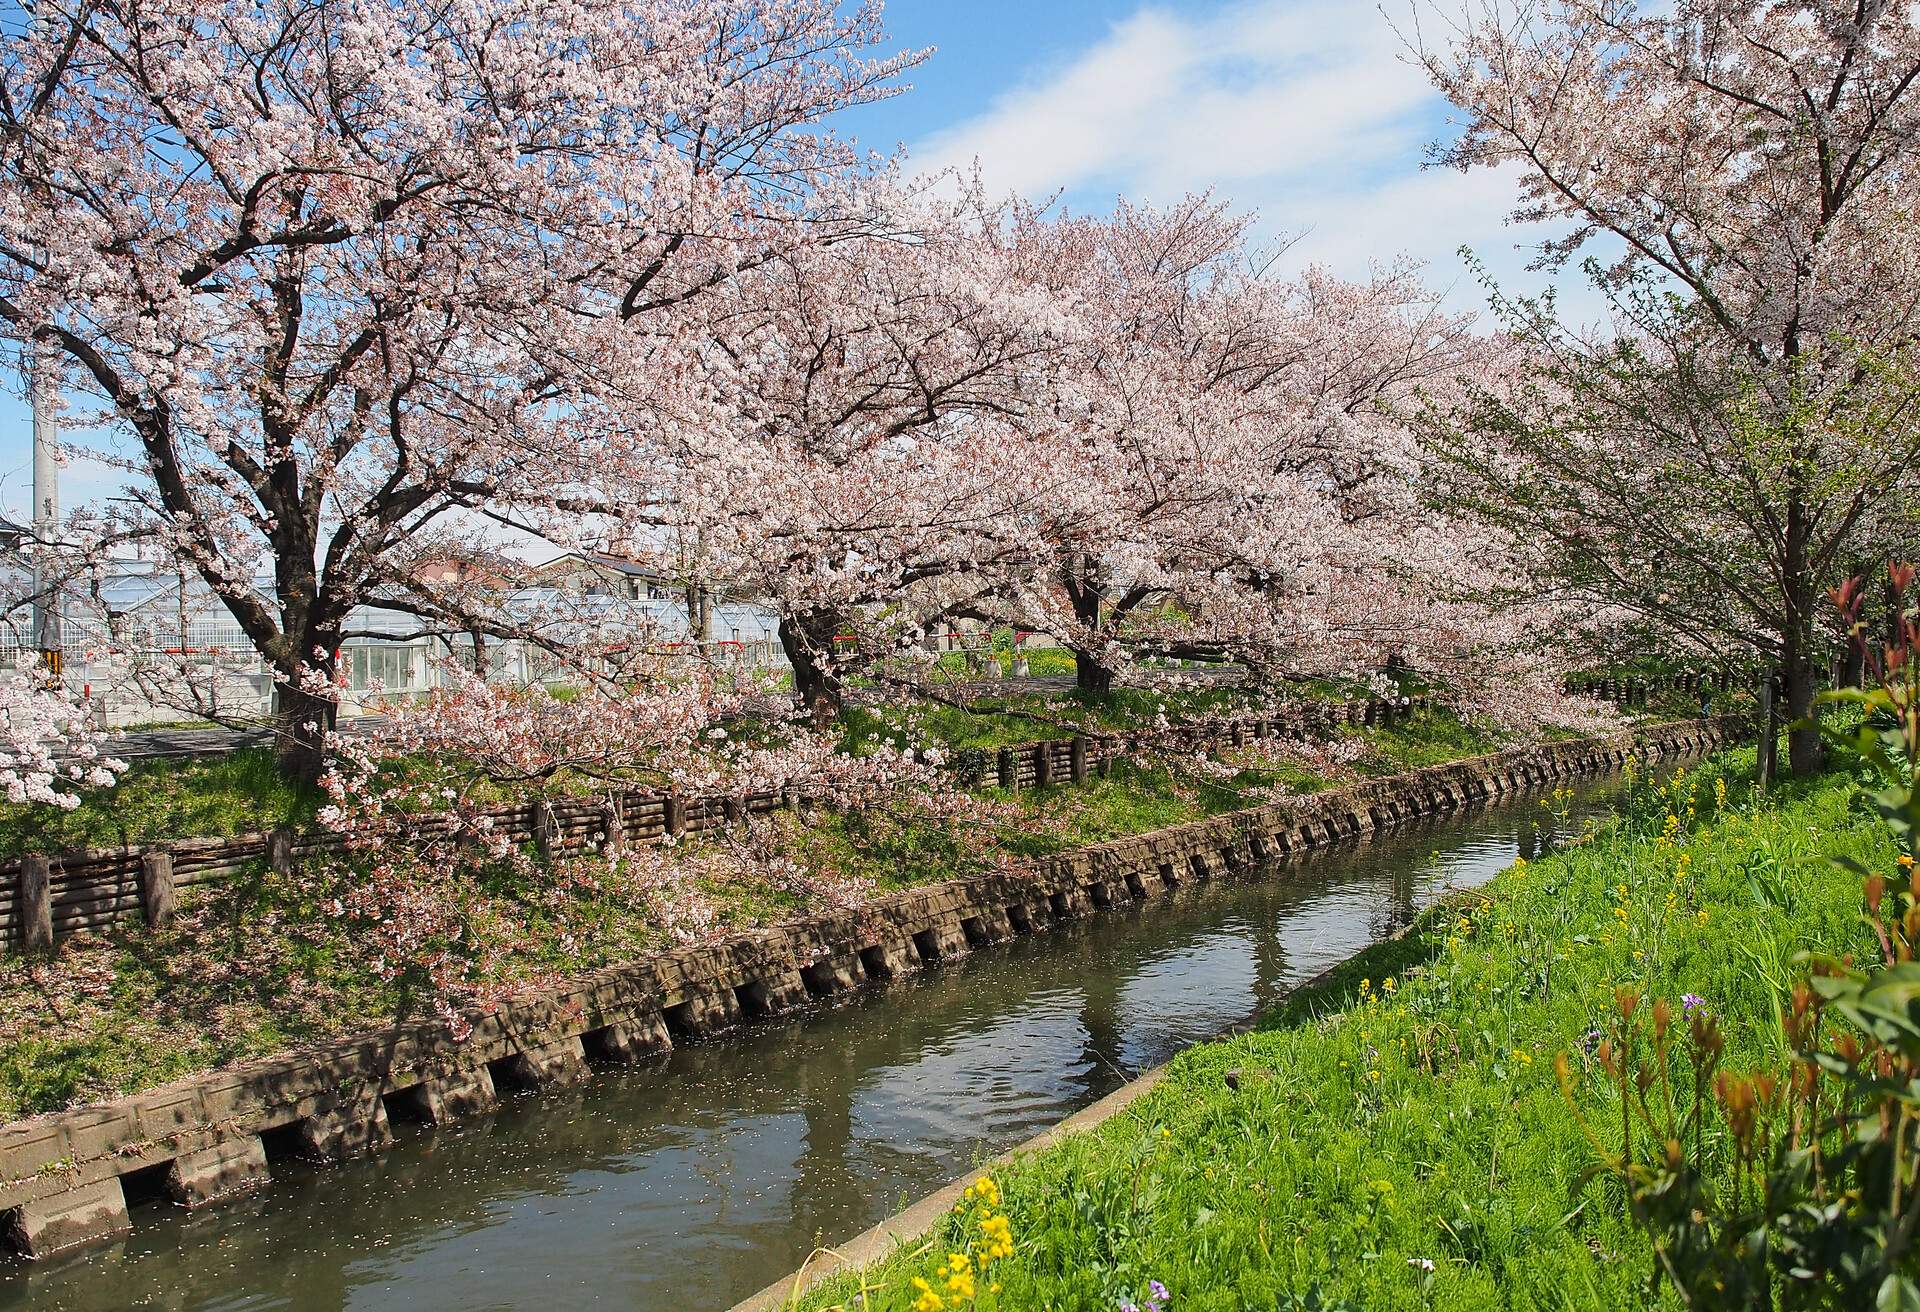 Japan sakura flower or cherry blossom full bloom in spring season along canal in Kawagoe city.